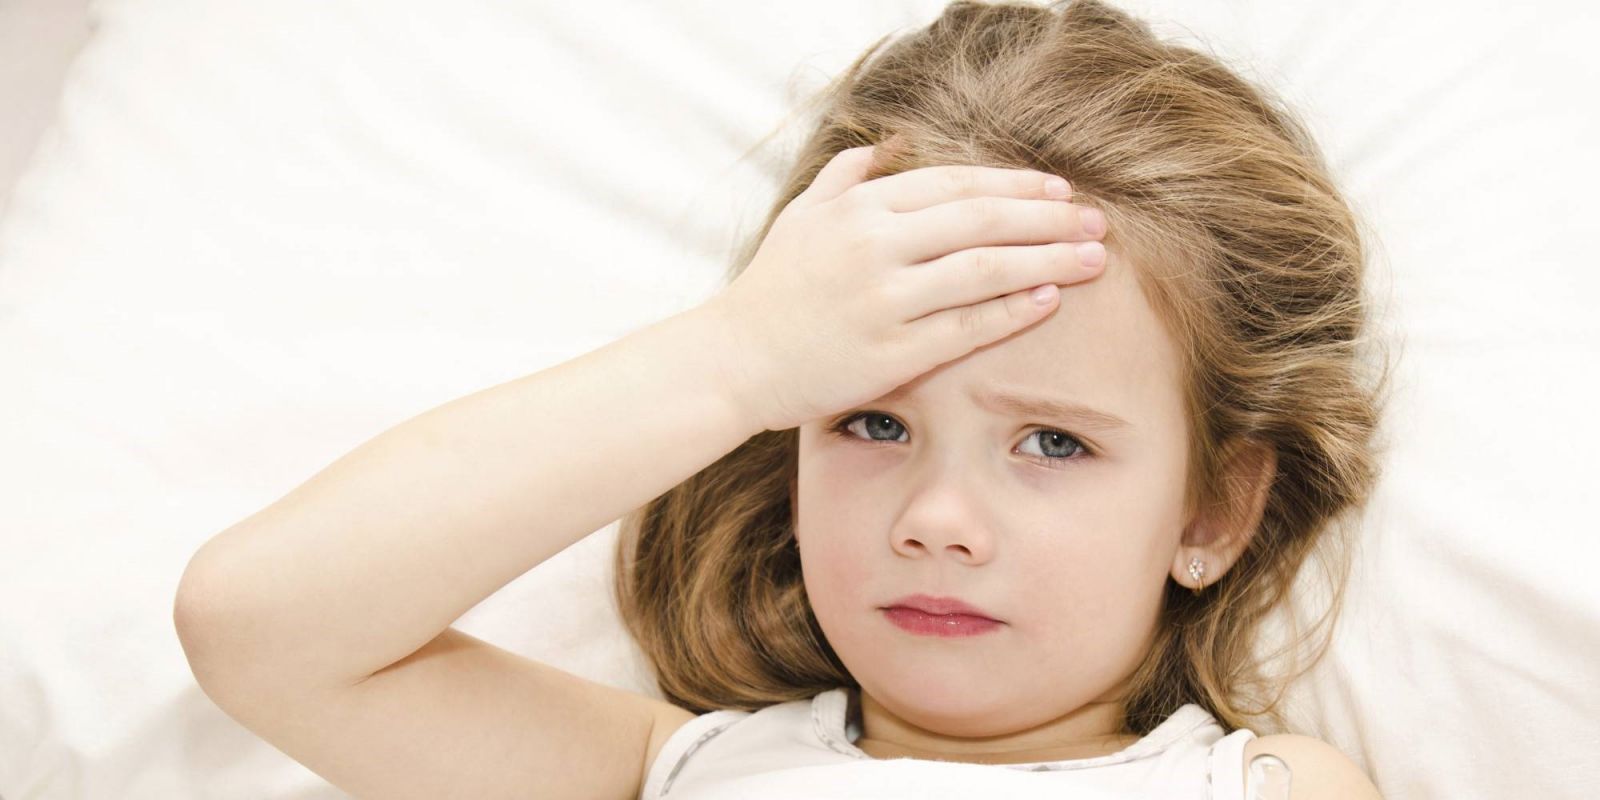 Trẻ bị sốt sau tiêm phòng sởi có nguy hiểm không 2?